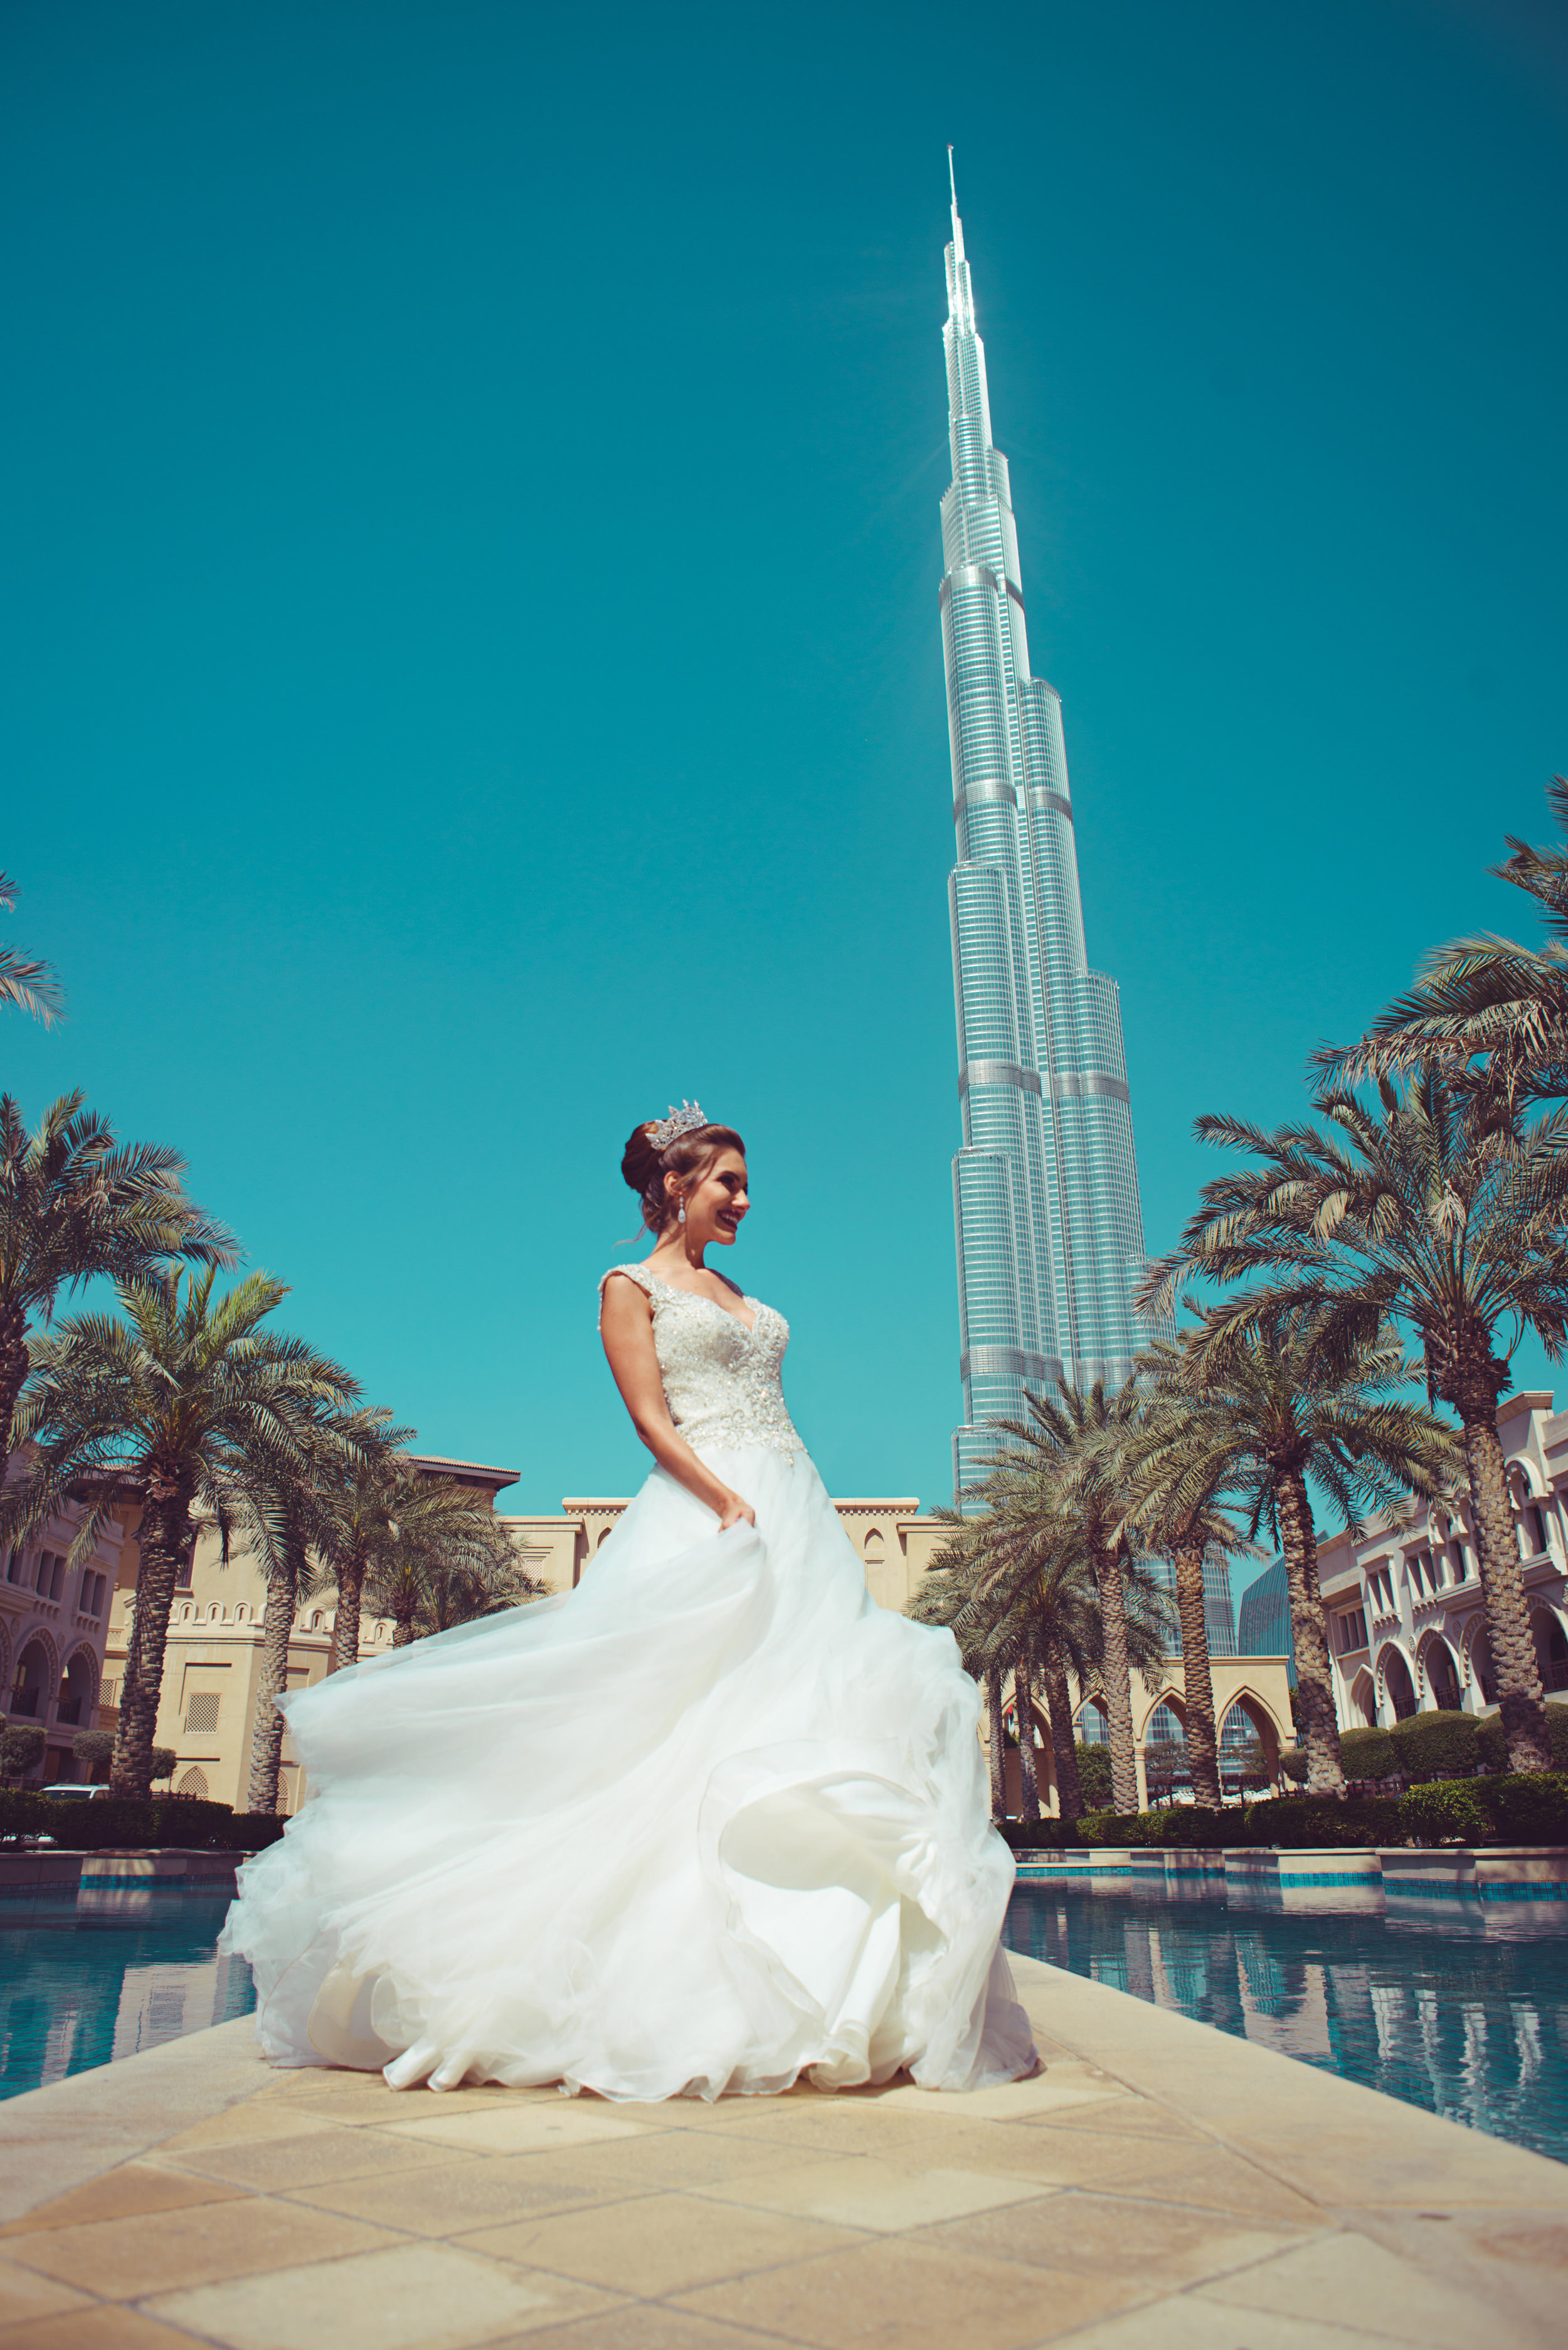 Barbara repaldi - Dubai101.jpg